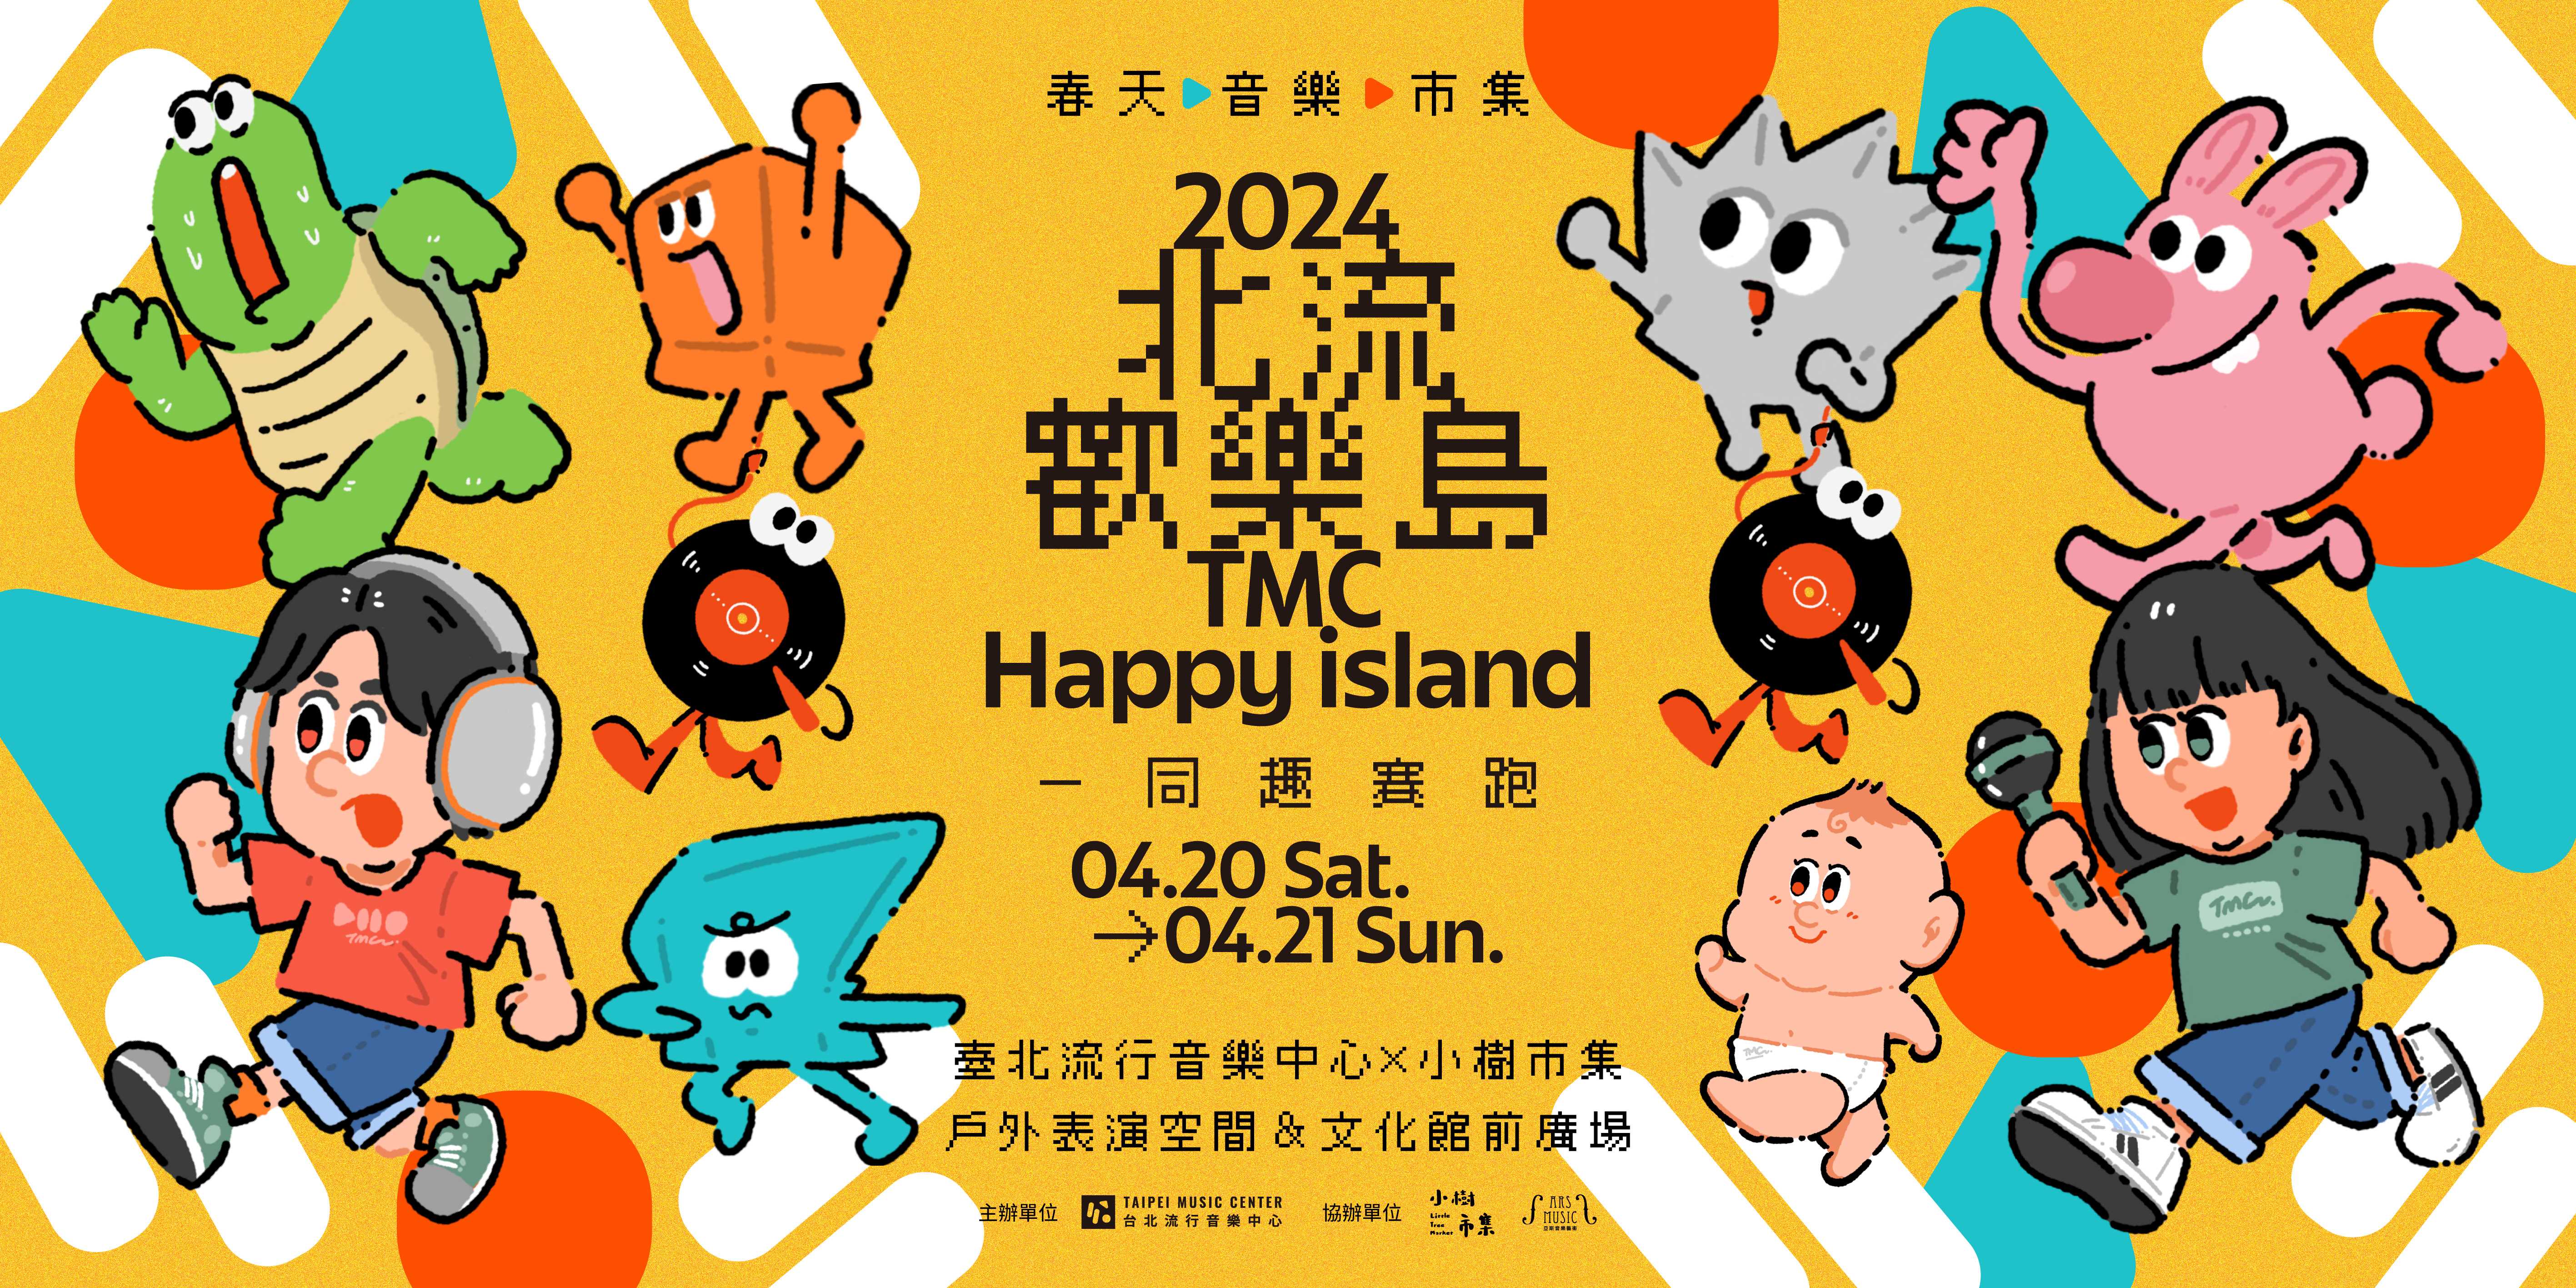 2024 TMC Happy Island